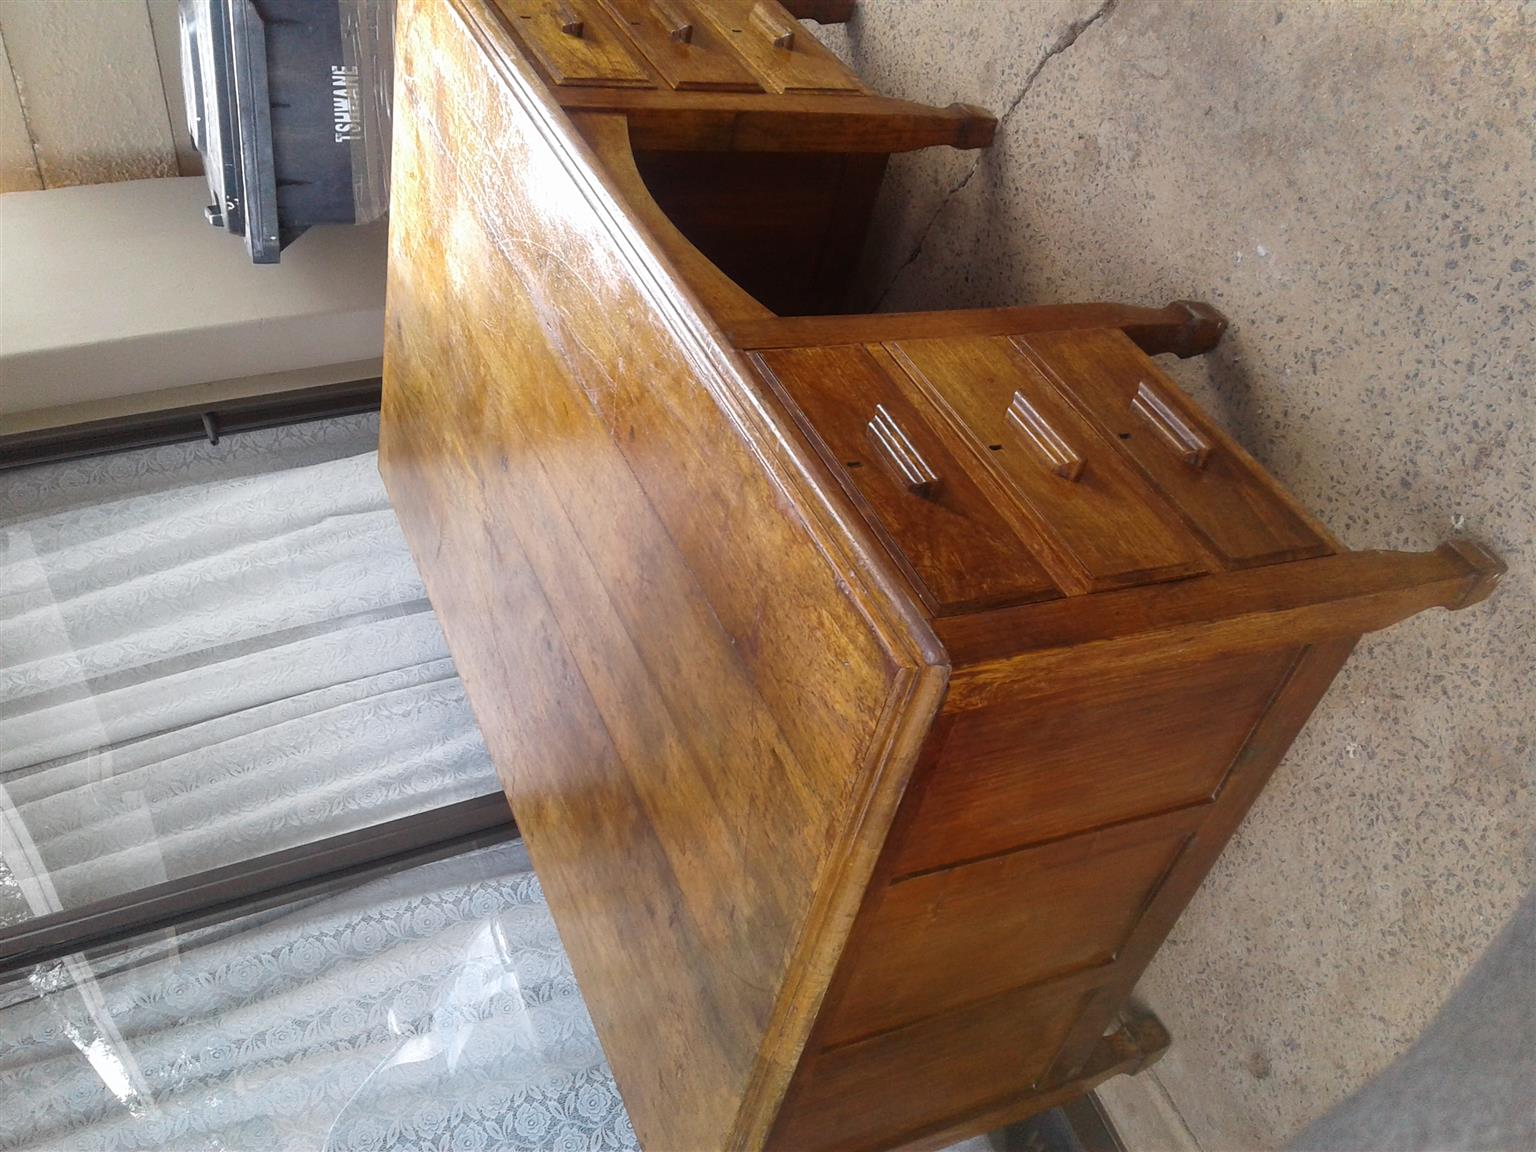 Antique solid teak wood desk.